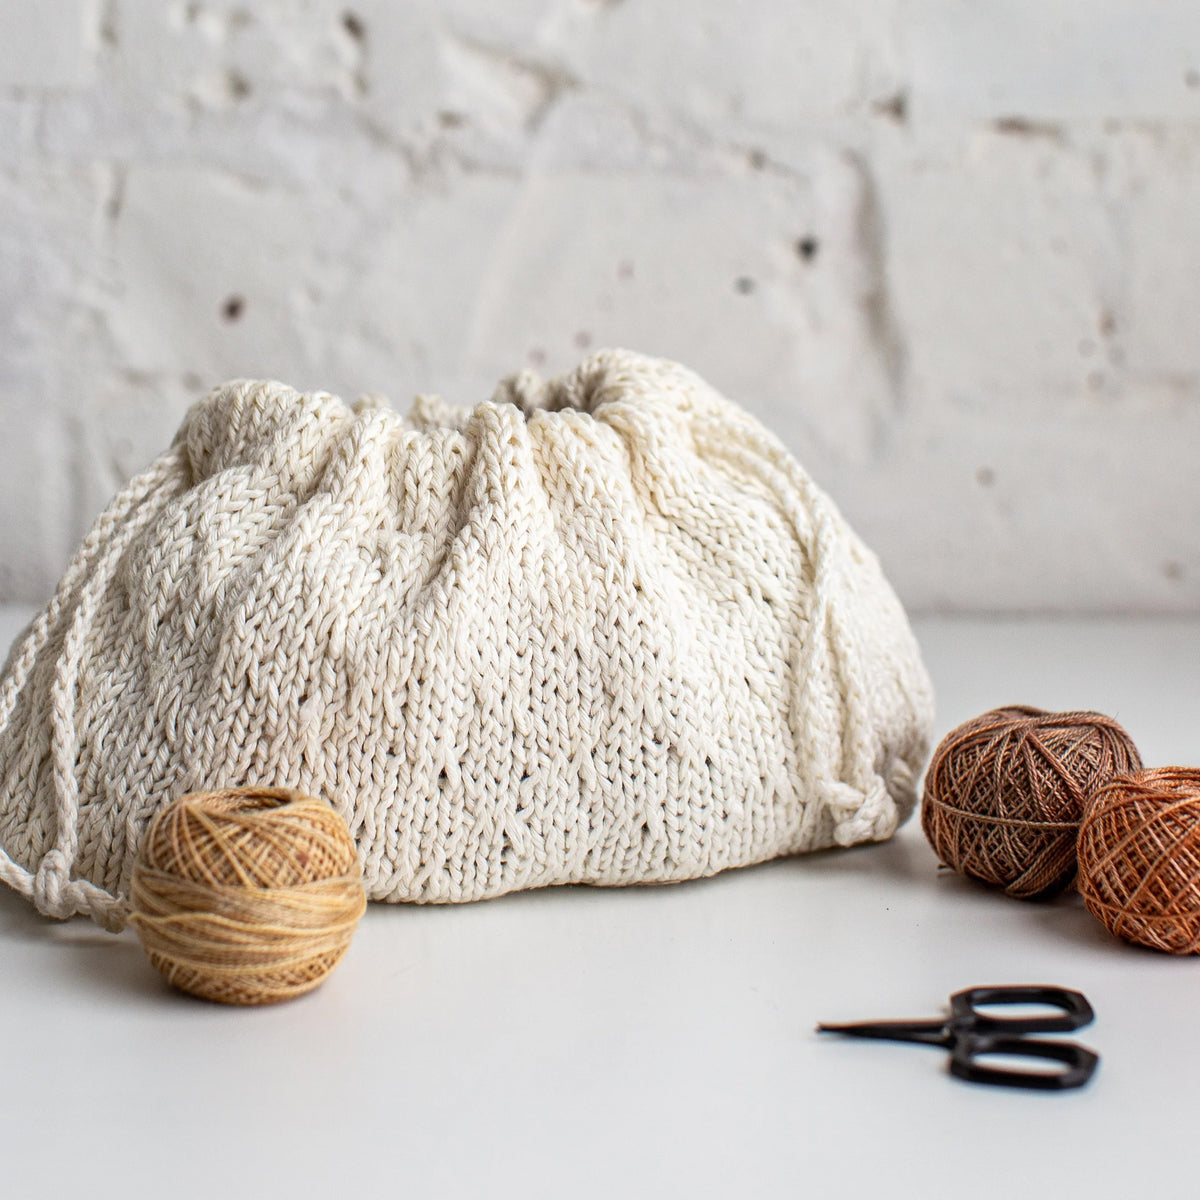 Flax and Twine Trellis Stitch Drawstring Bag Kit